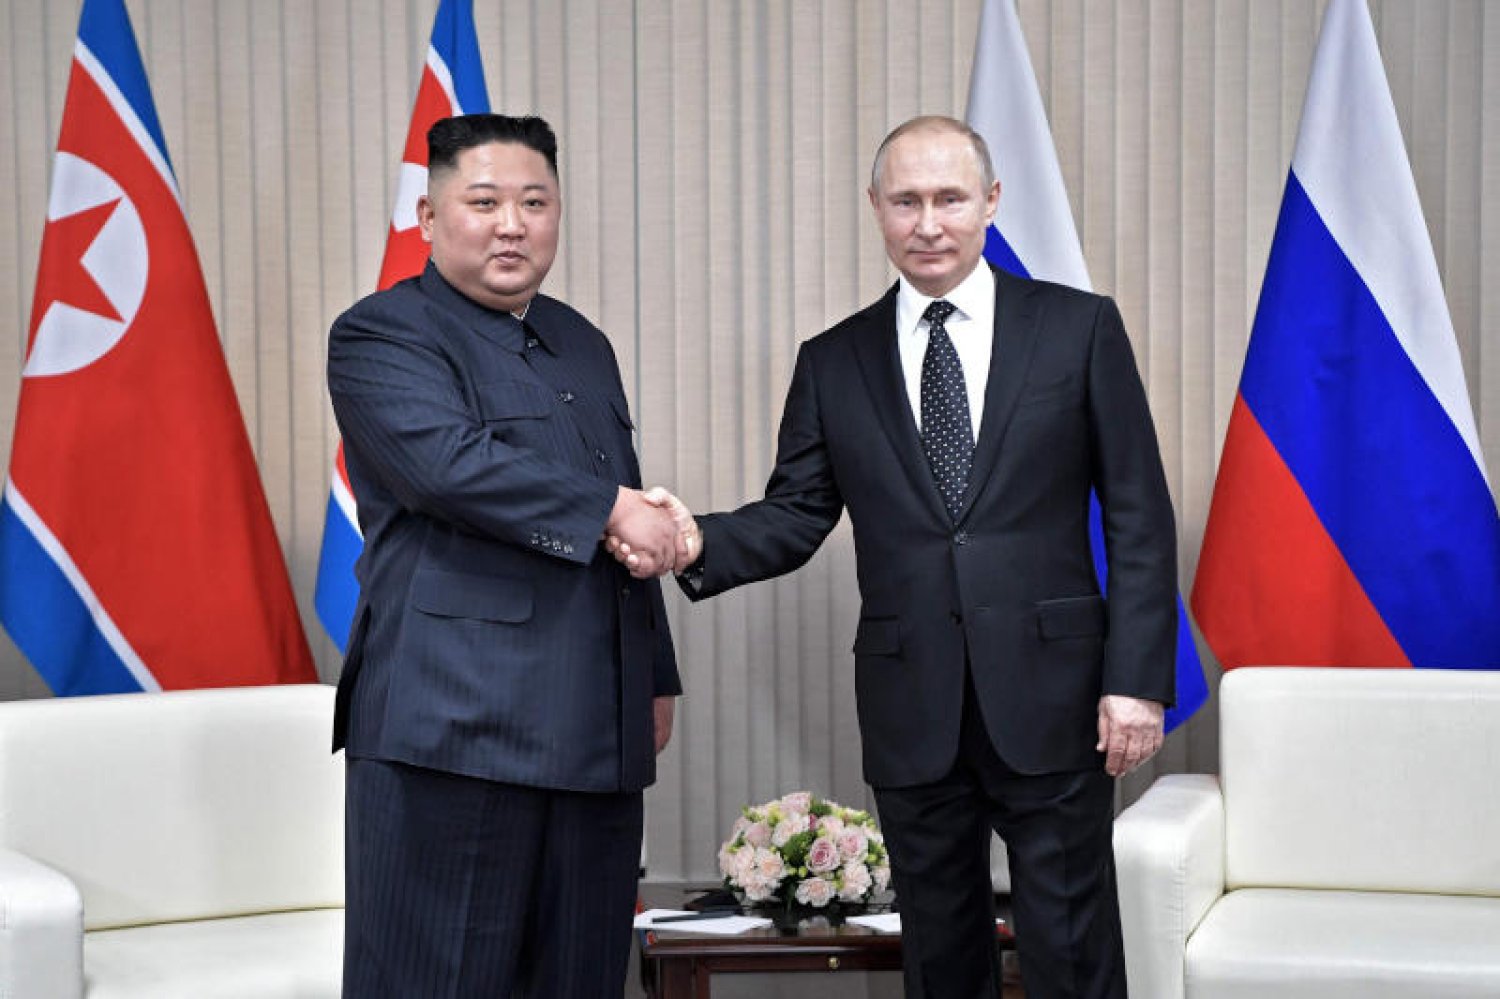 زيارة مرتقبة لكيم جونج أون إلى روسيا تثير تساؤلات حول صفقة أسلحة محتملة